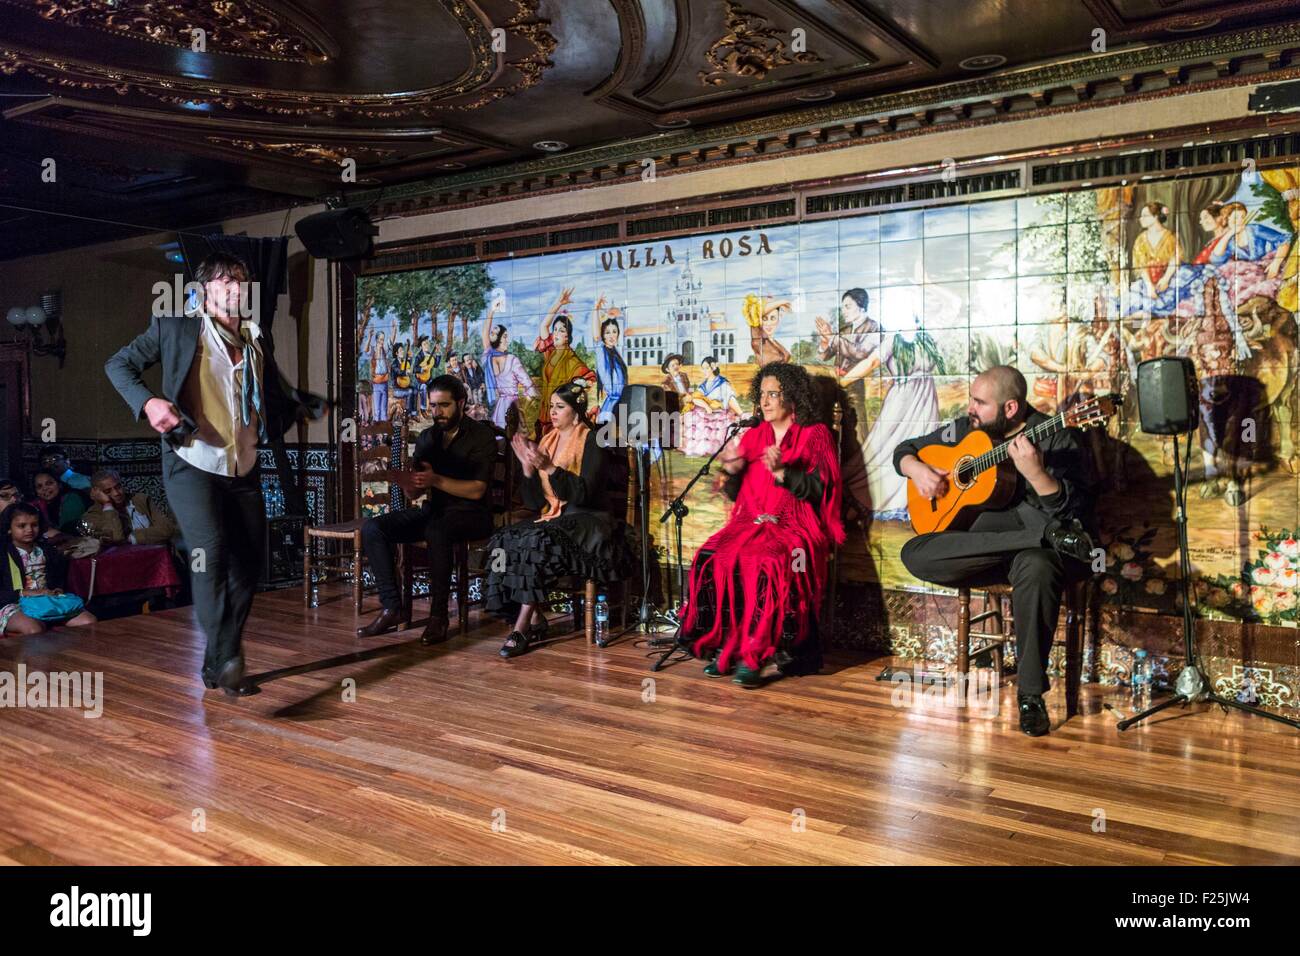 España, Madrid, barrio las Huertas, espectáculo de flamenco en el Villa Rosa Foto de stock